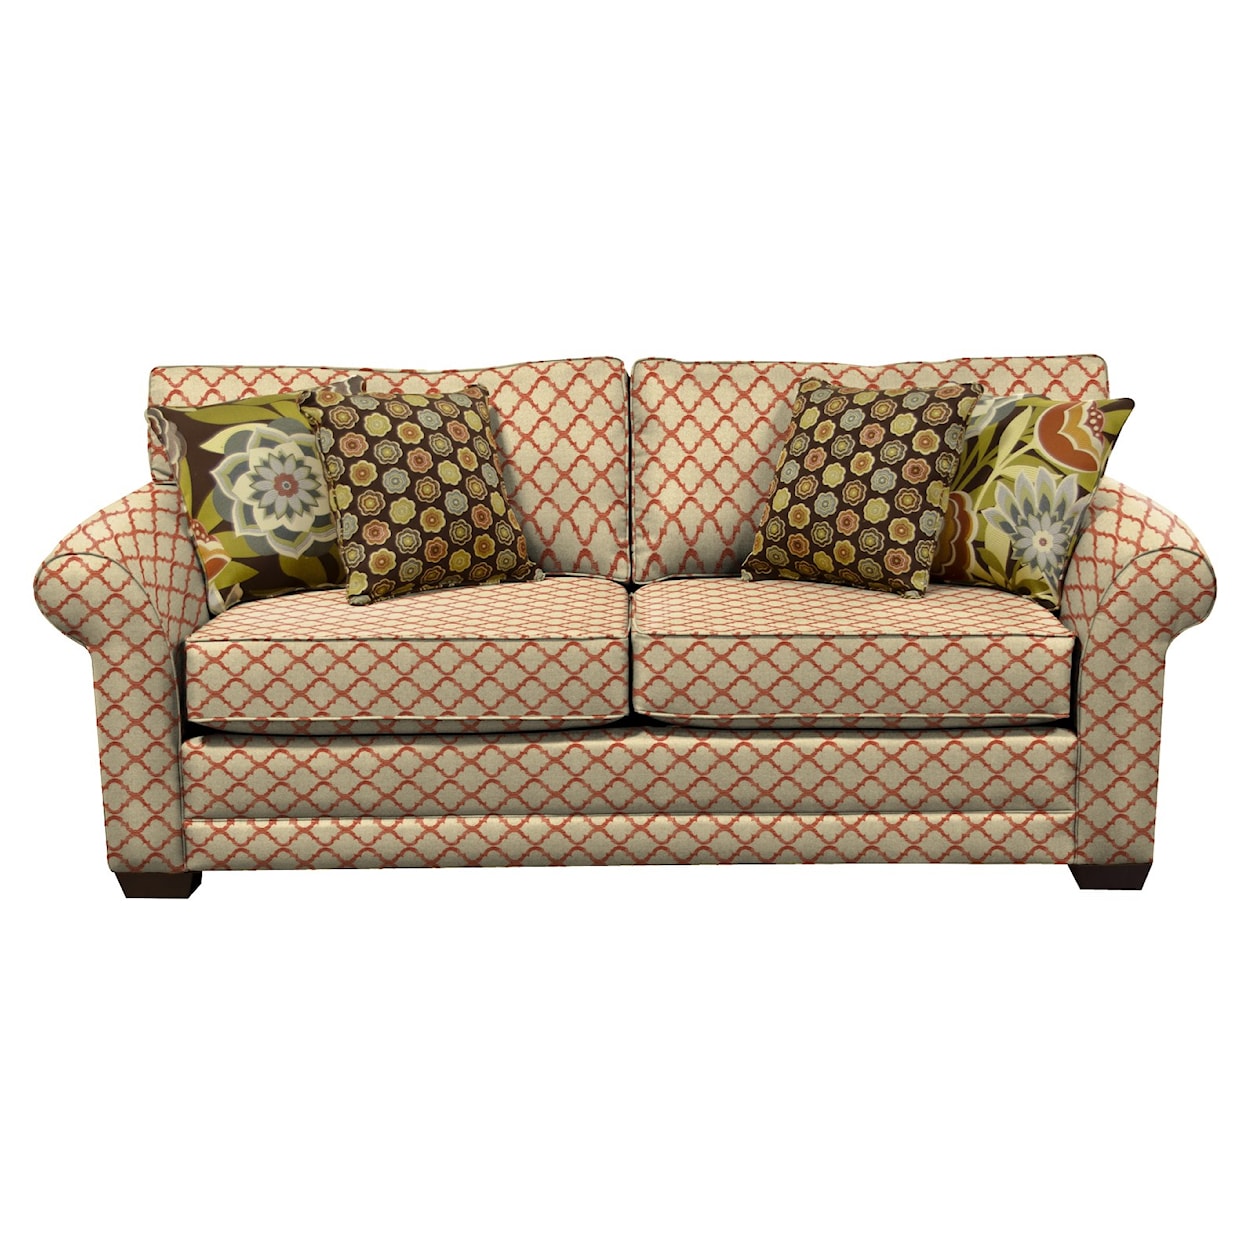 England 5630 Series Upholstered Sofa